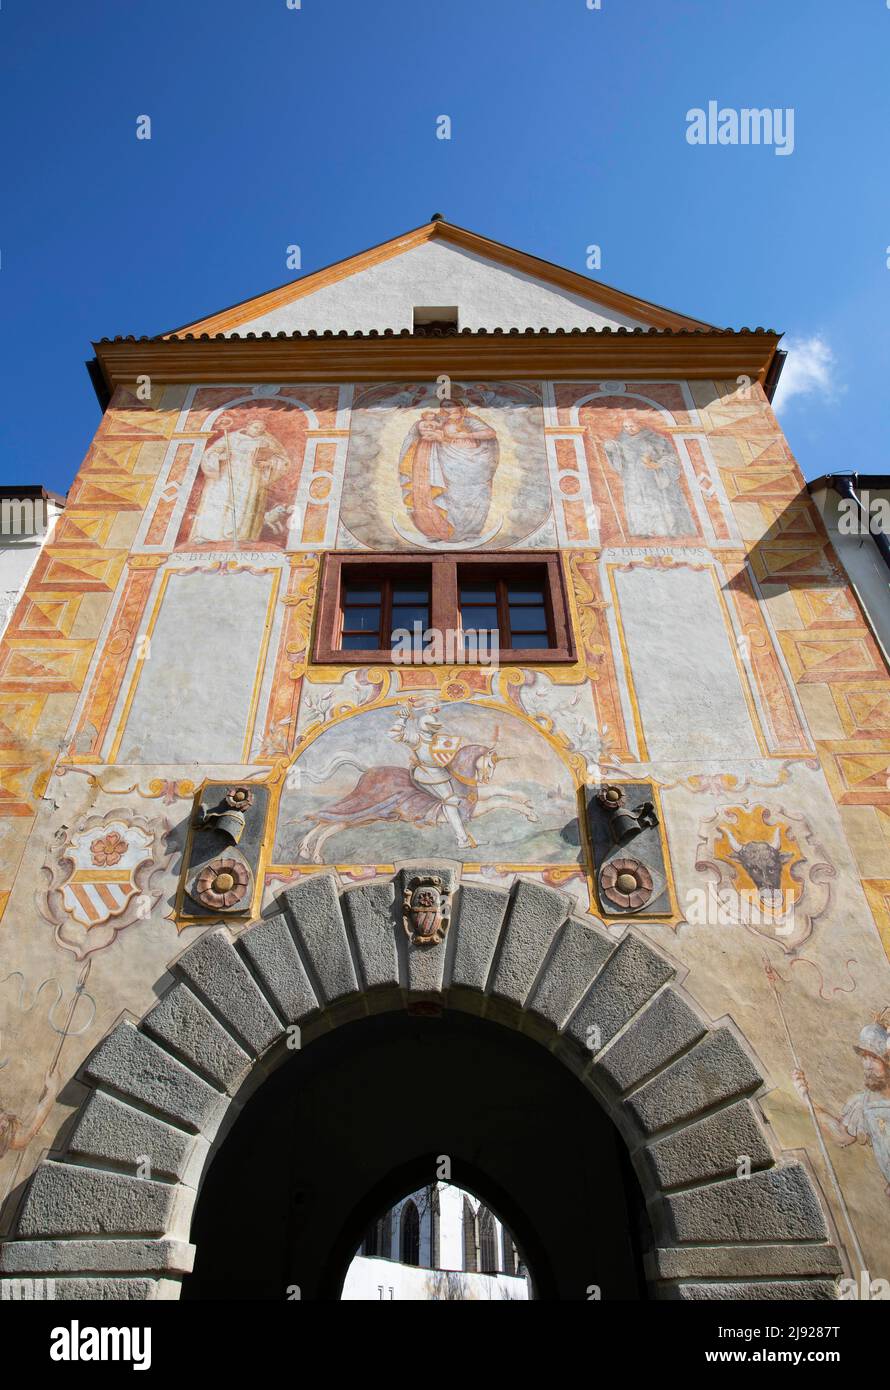 Porte principale avec fresques, Abbaye cistercienne de Vyssi Brod, Vyssi Brod, Hohenfurth, Sumava, Bohême du Sud, Bohême, République tchèque Banque D'Images